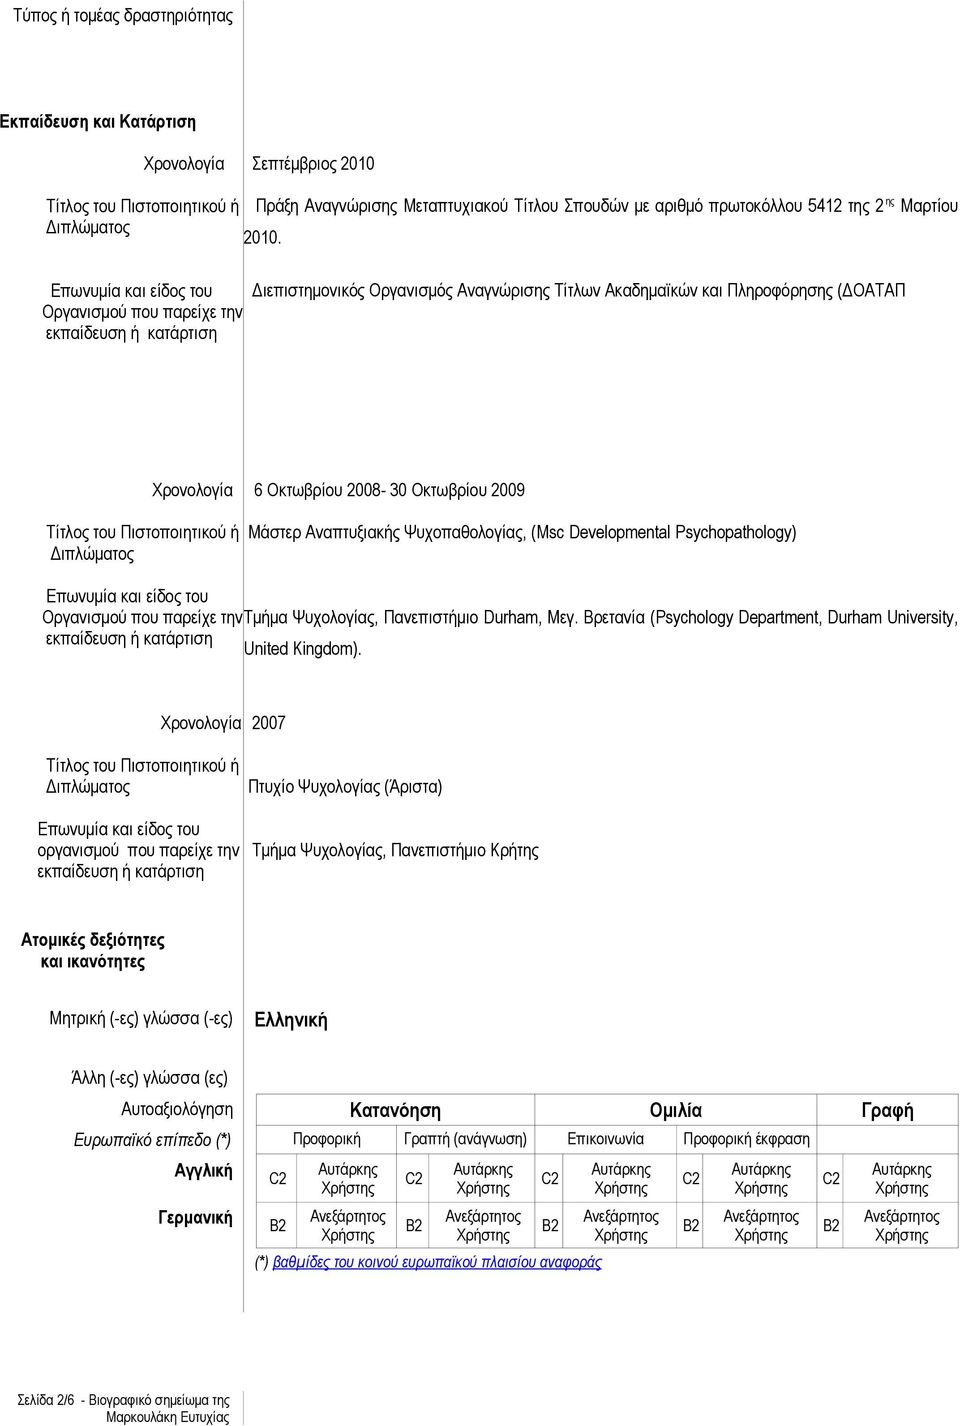 Διεπιστημονικός Οργανισμός Αναγνώρισης Τίτλων Ακαδημαϊκών και Πληροφόρησης (ΔΟΑΤΑΠ Χρονολογία Τίτλος του Πιστοποιητικού ή Διπλώματος 6 Οκτωβρίου 2008-30 Οκτωβρίου 2009 Μάστερ Αναπτυξιακής